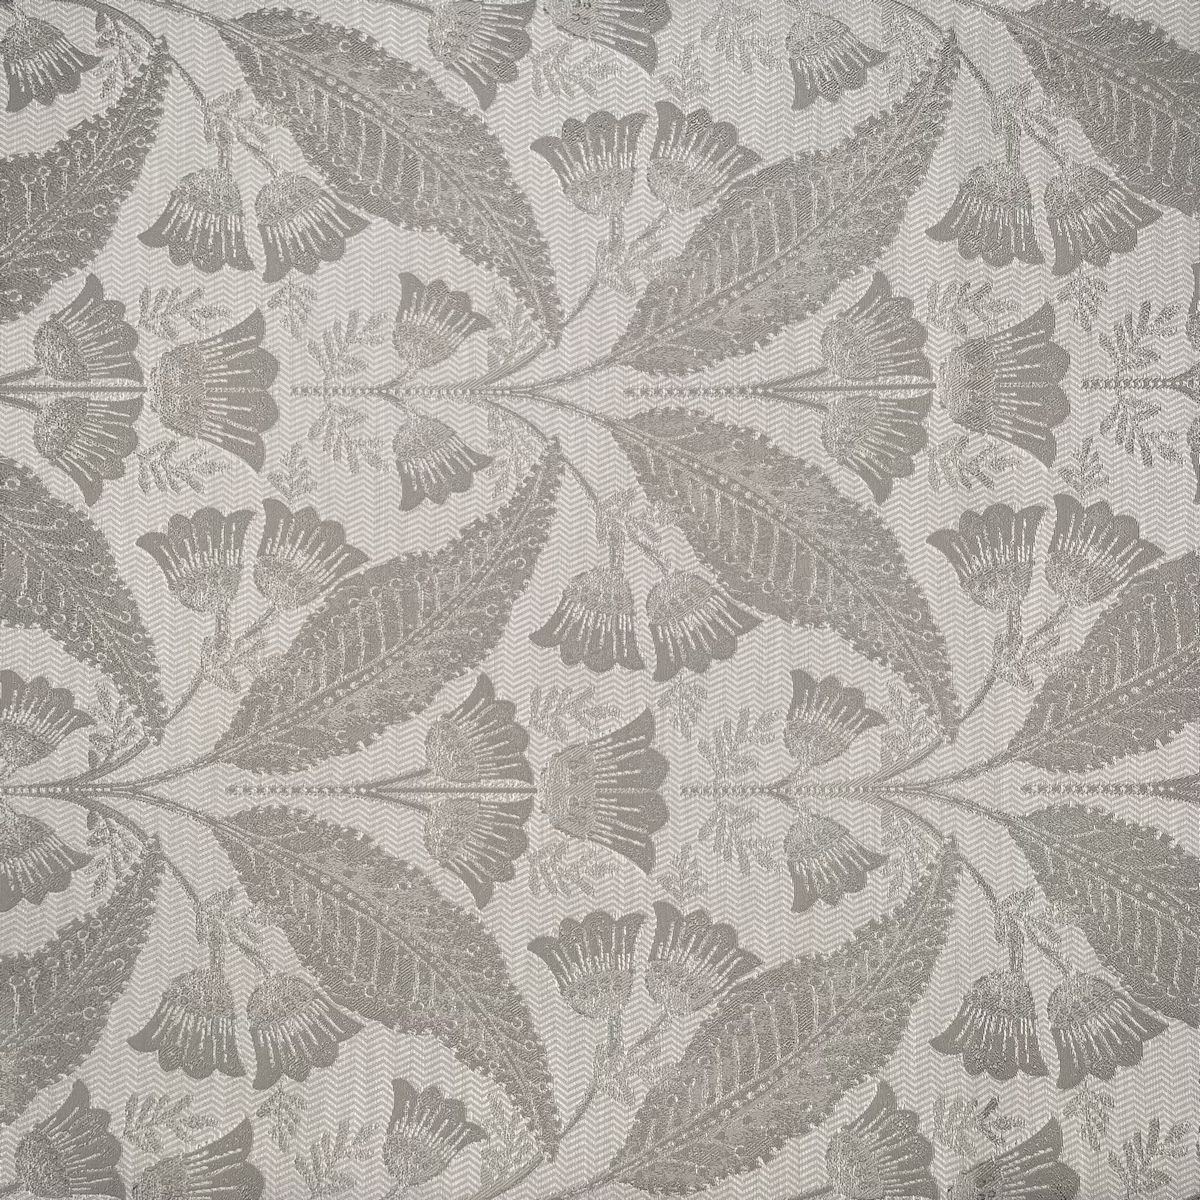 Burghley Fog Fabric by Chatham Glyn